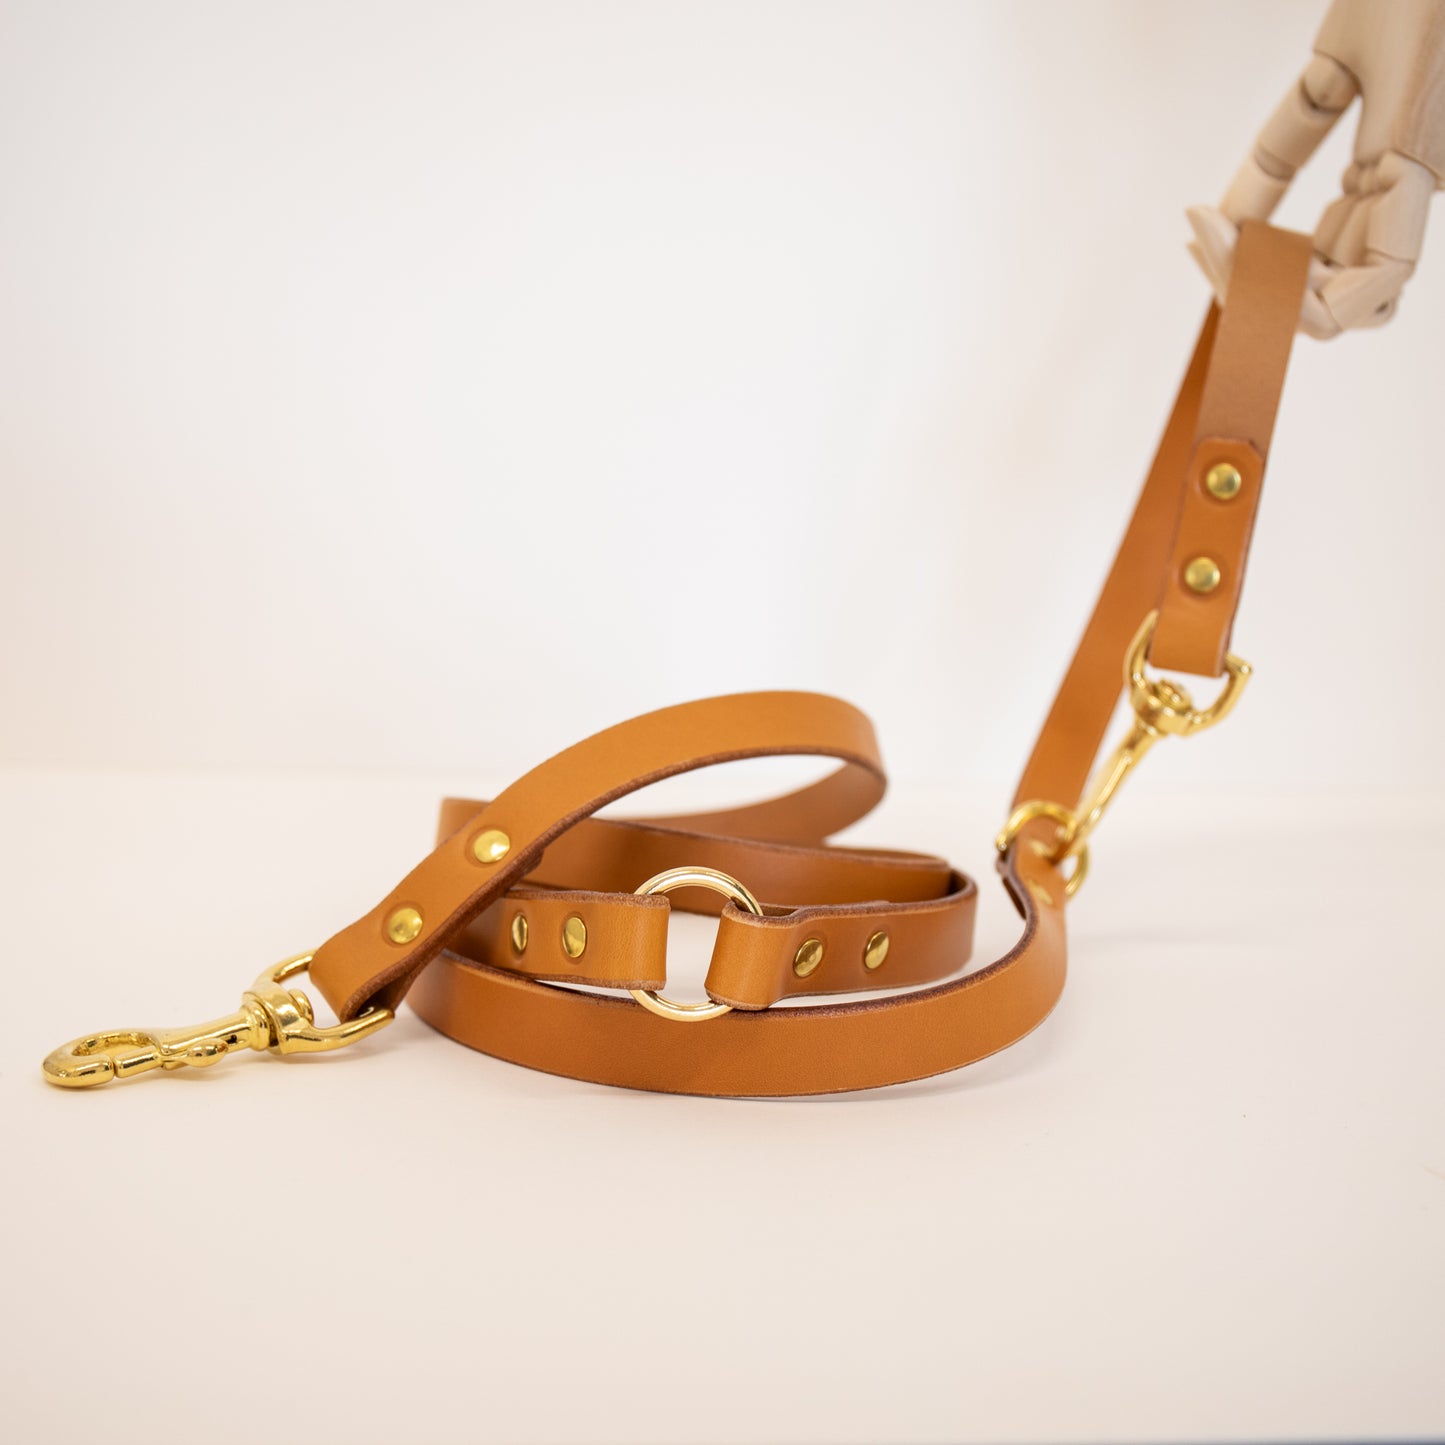 Nacho tan adjustable luxury leather lead